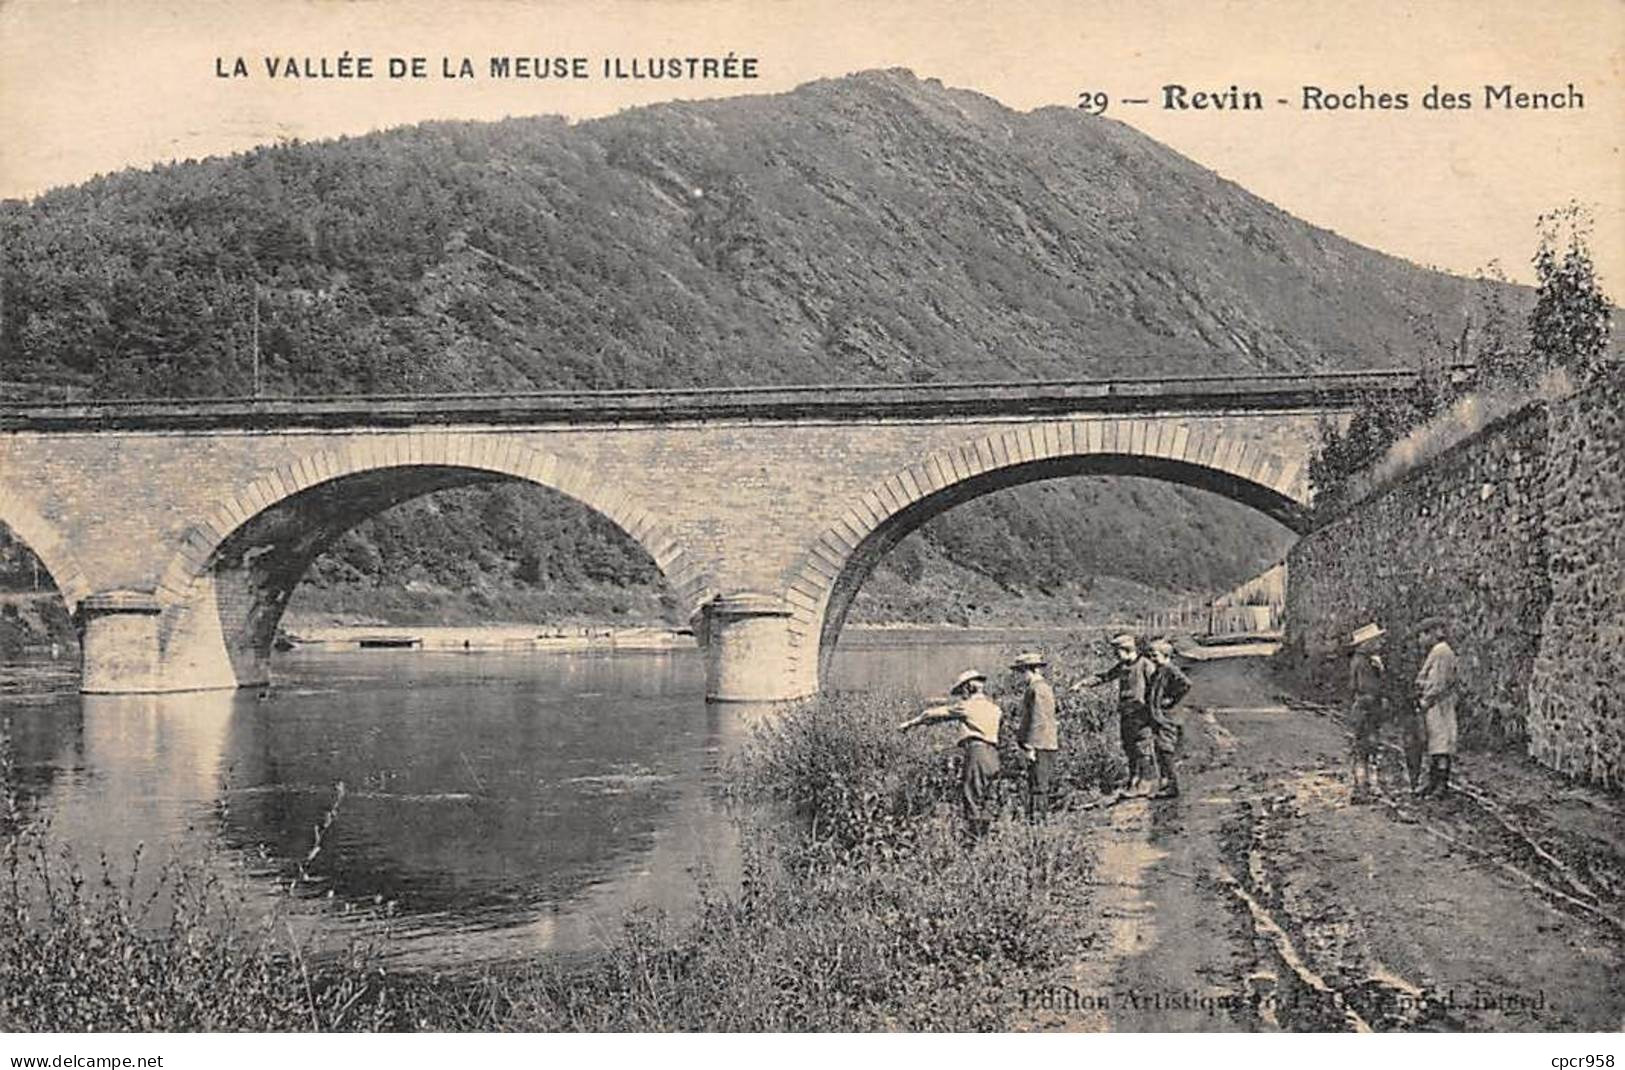 08 - REVIN - SAN56706 - Roches Des Mench - La Vallée De La Meuse Illustrée - Revin